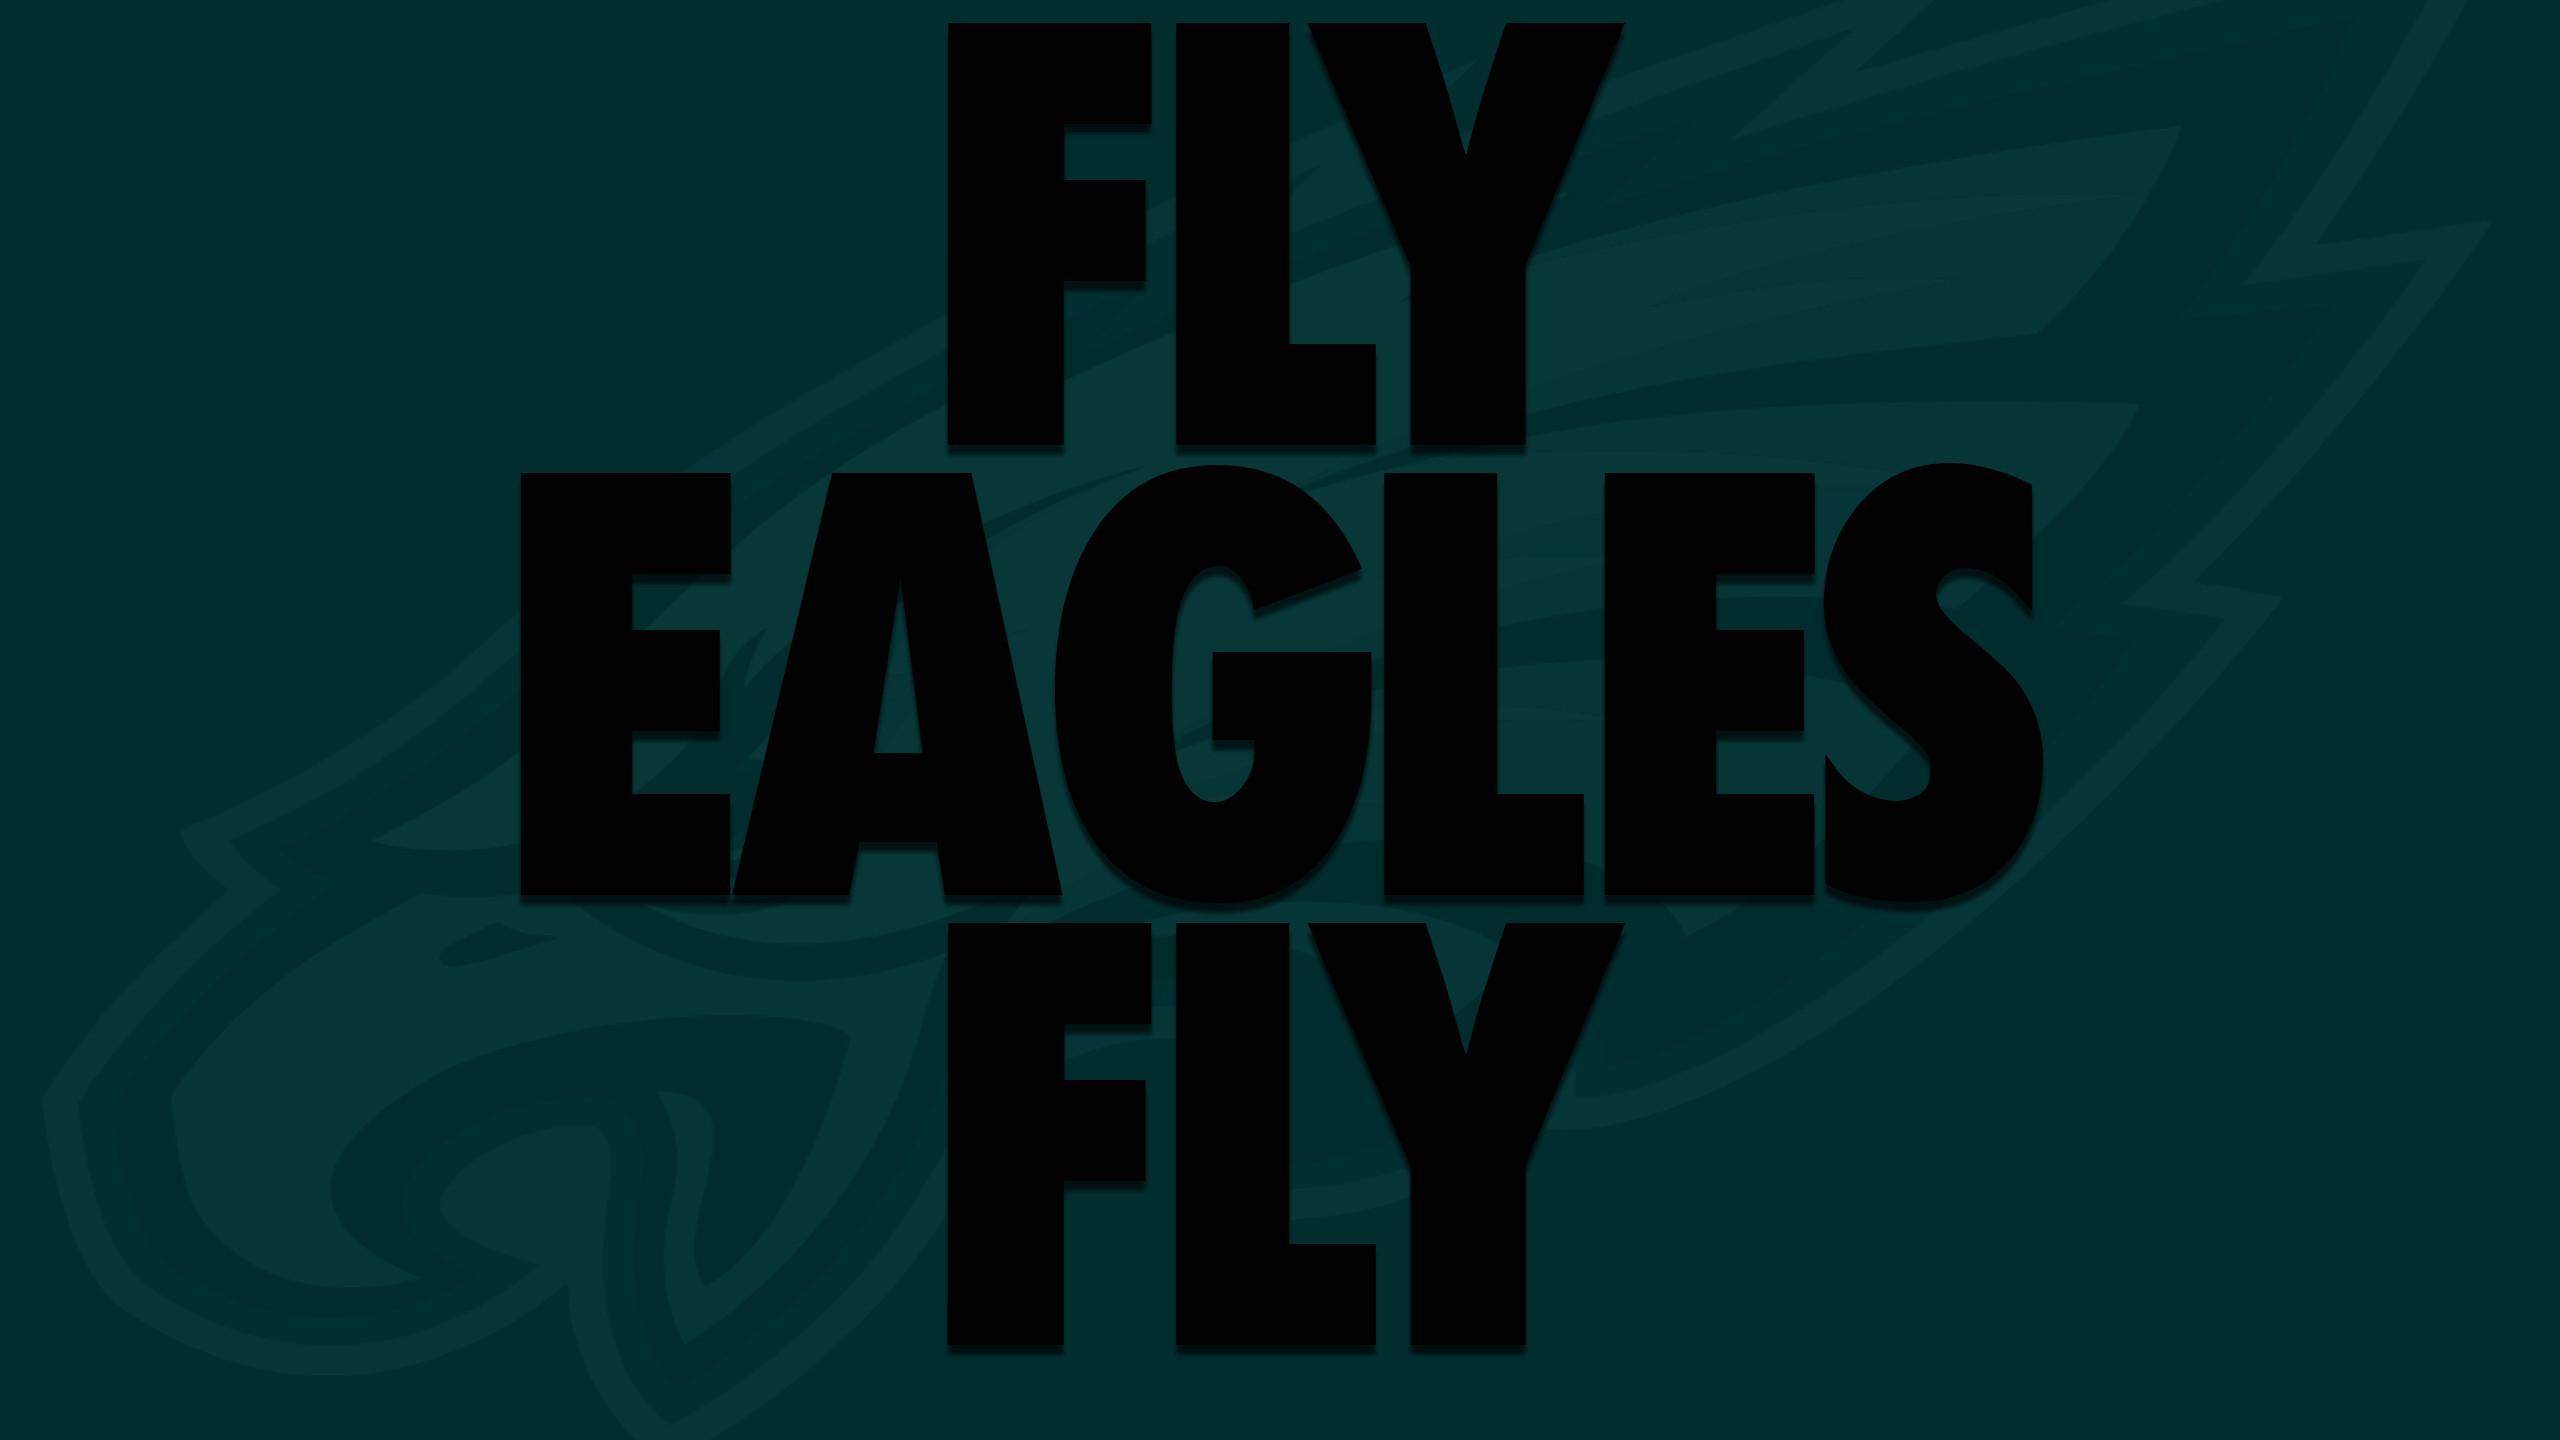 Eagles Wallpaper Best Of Philadelphia Eagles 2017 Wallpaper